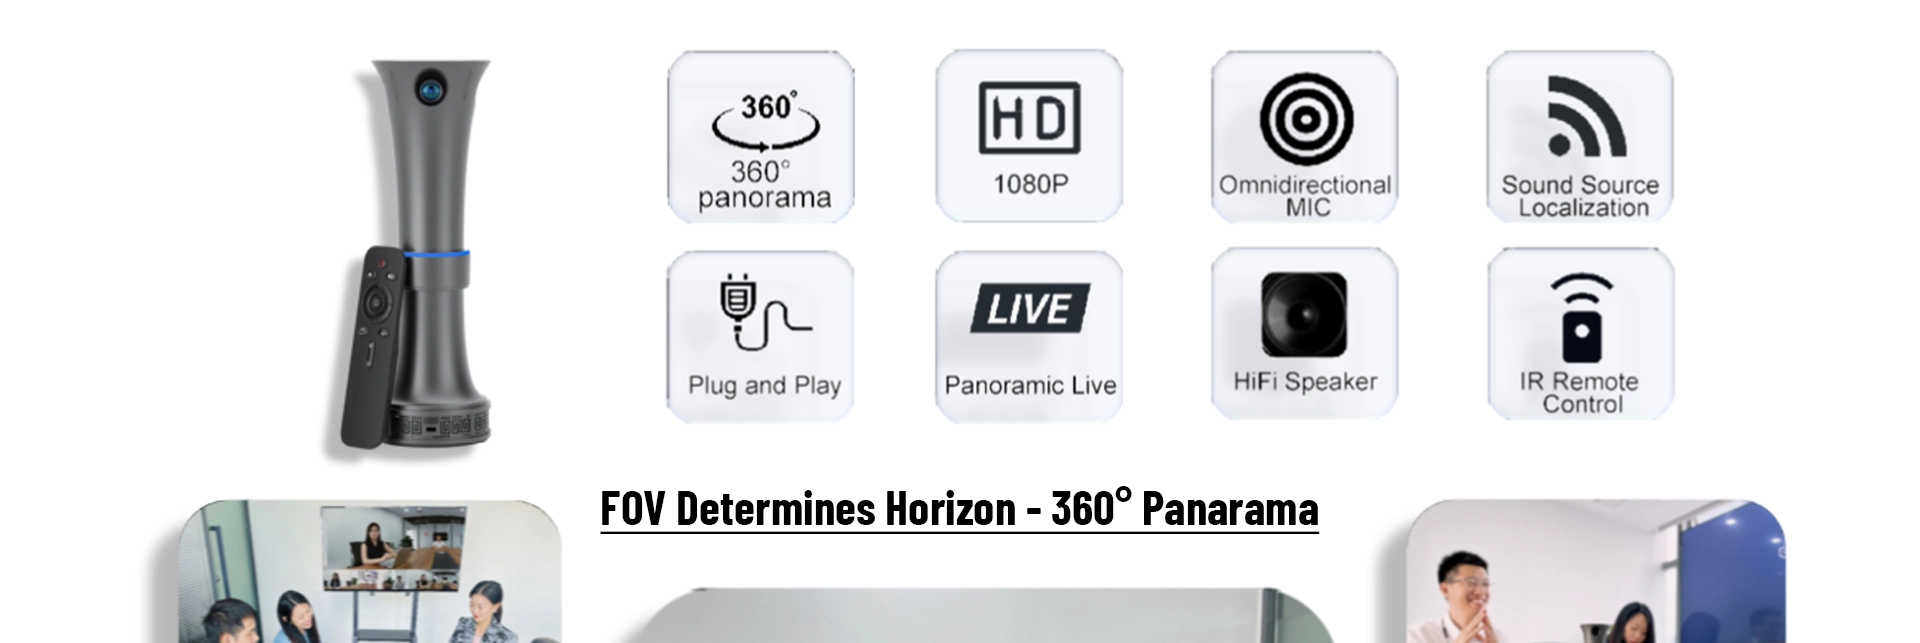 Kamera persidangan Video panorama 360 darjah dengan Speakerphone